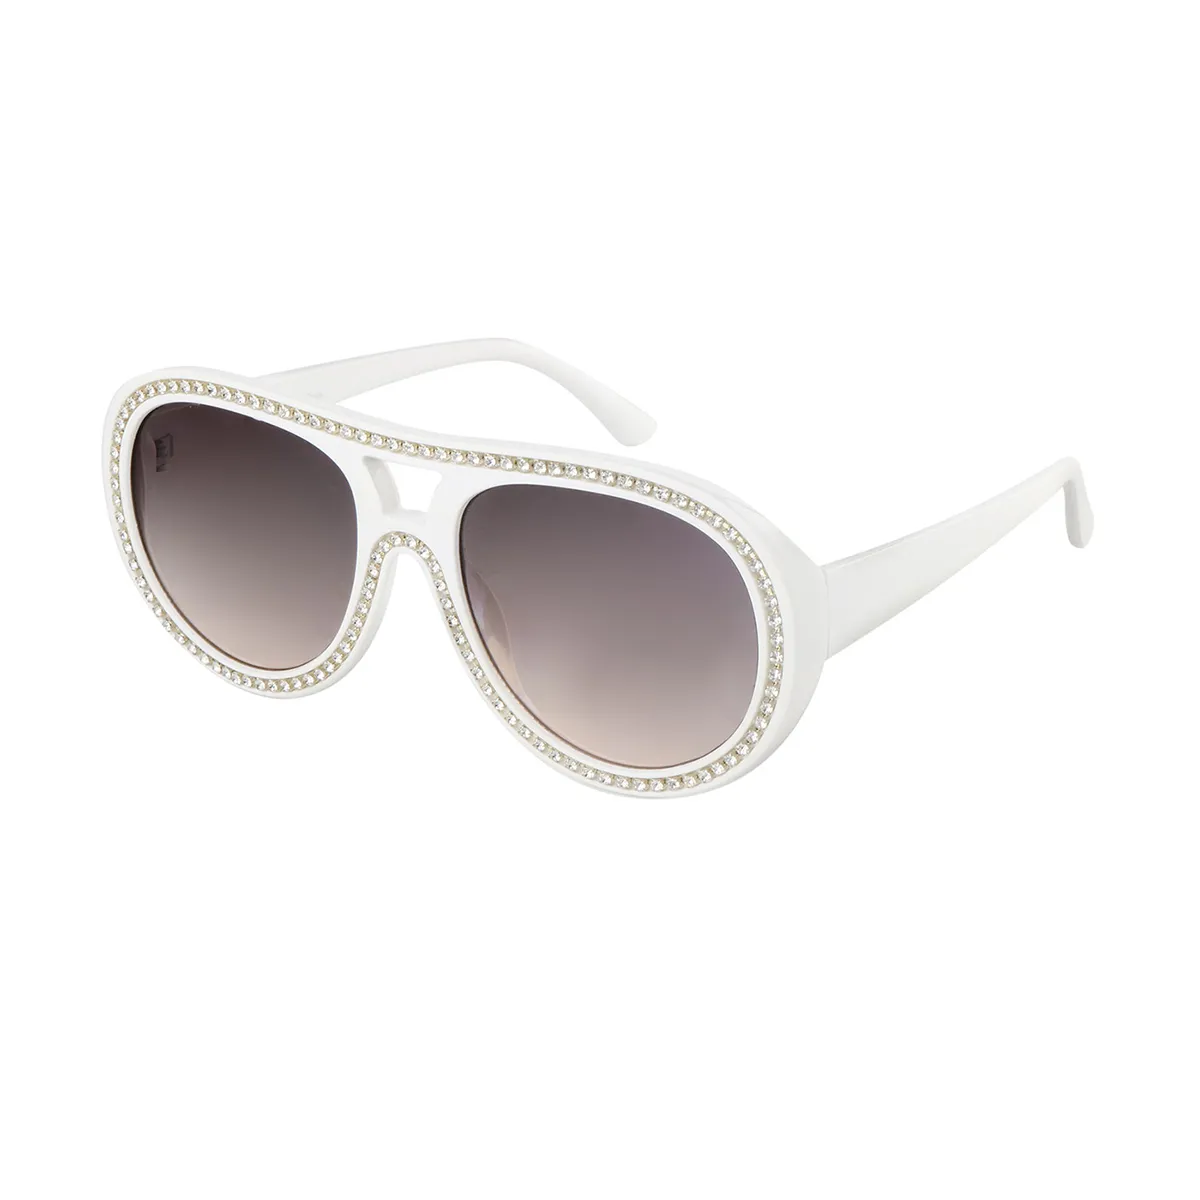 Emeline - Aviator White Sunglasses for Women